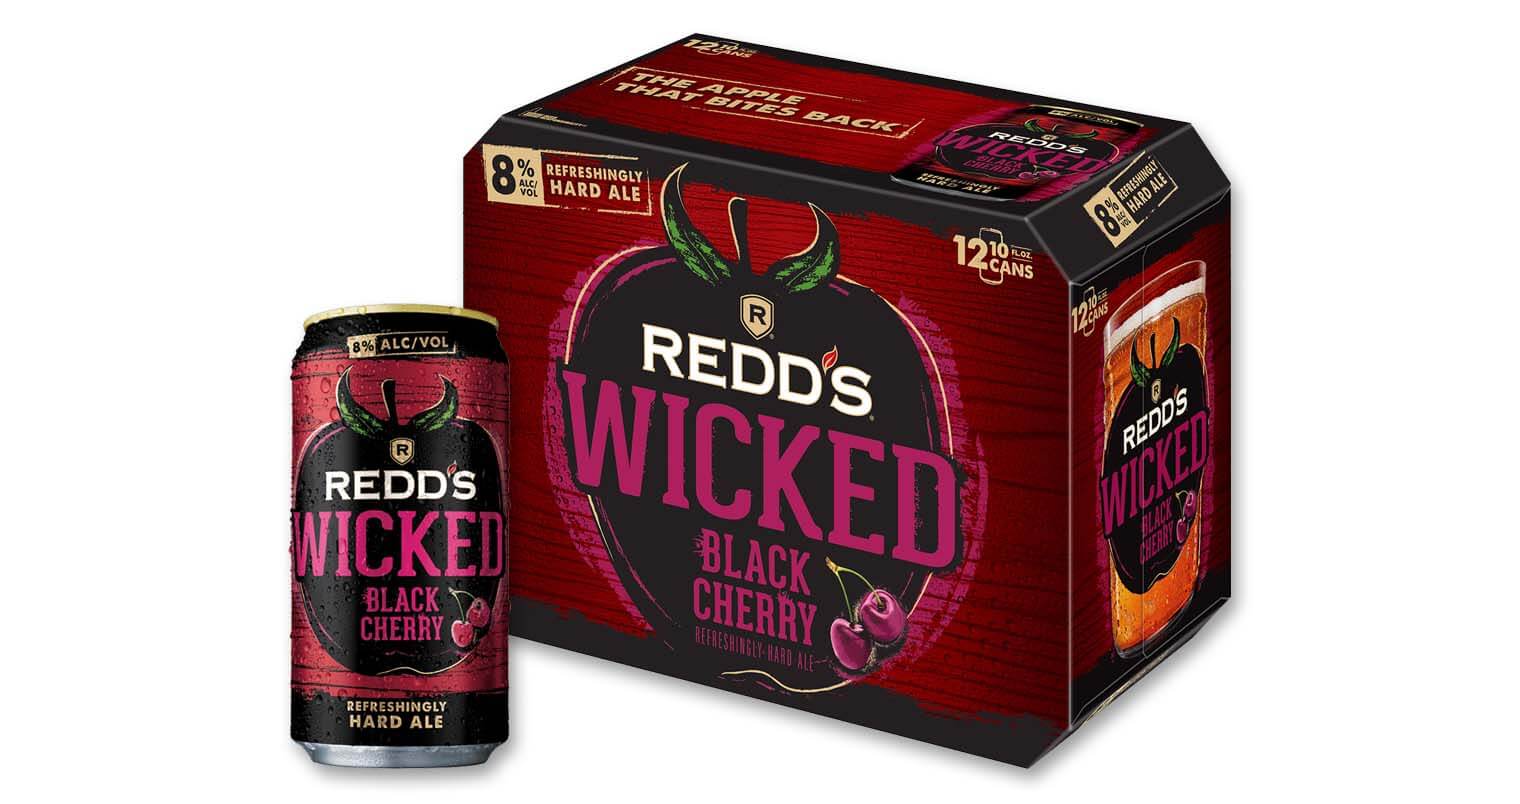 Redd's Adds a Wicked Black Cherry Twist